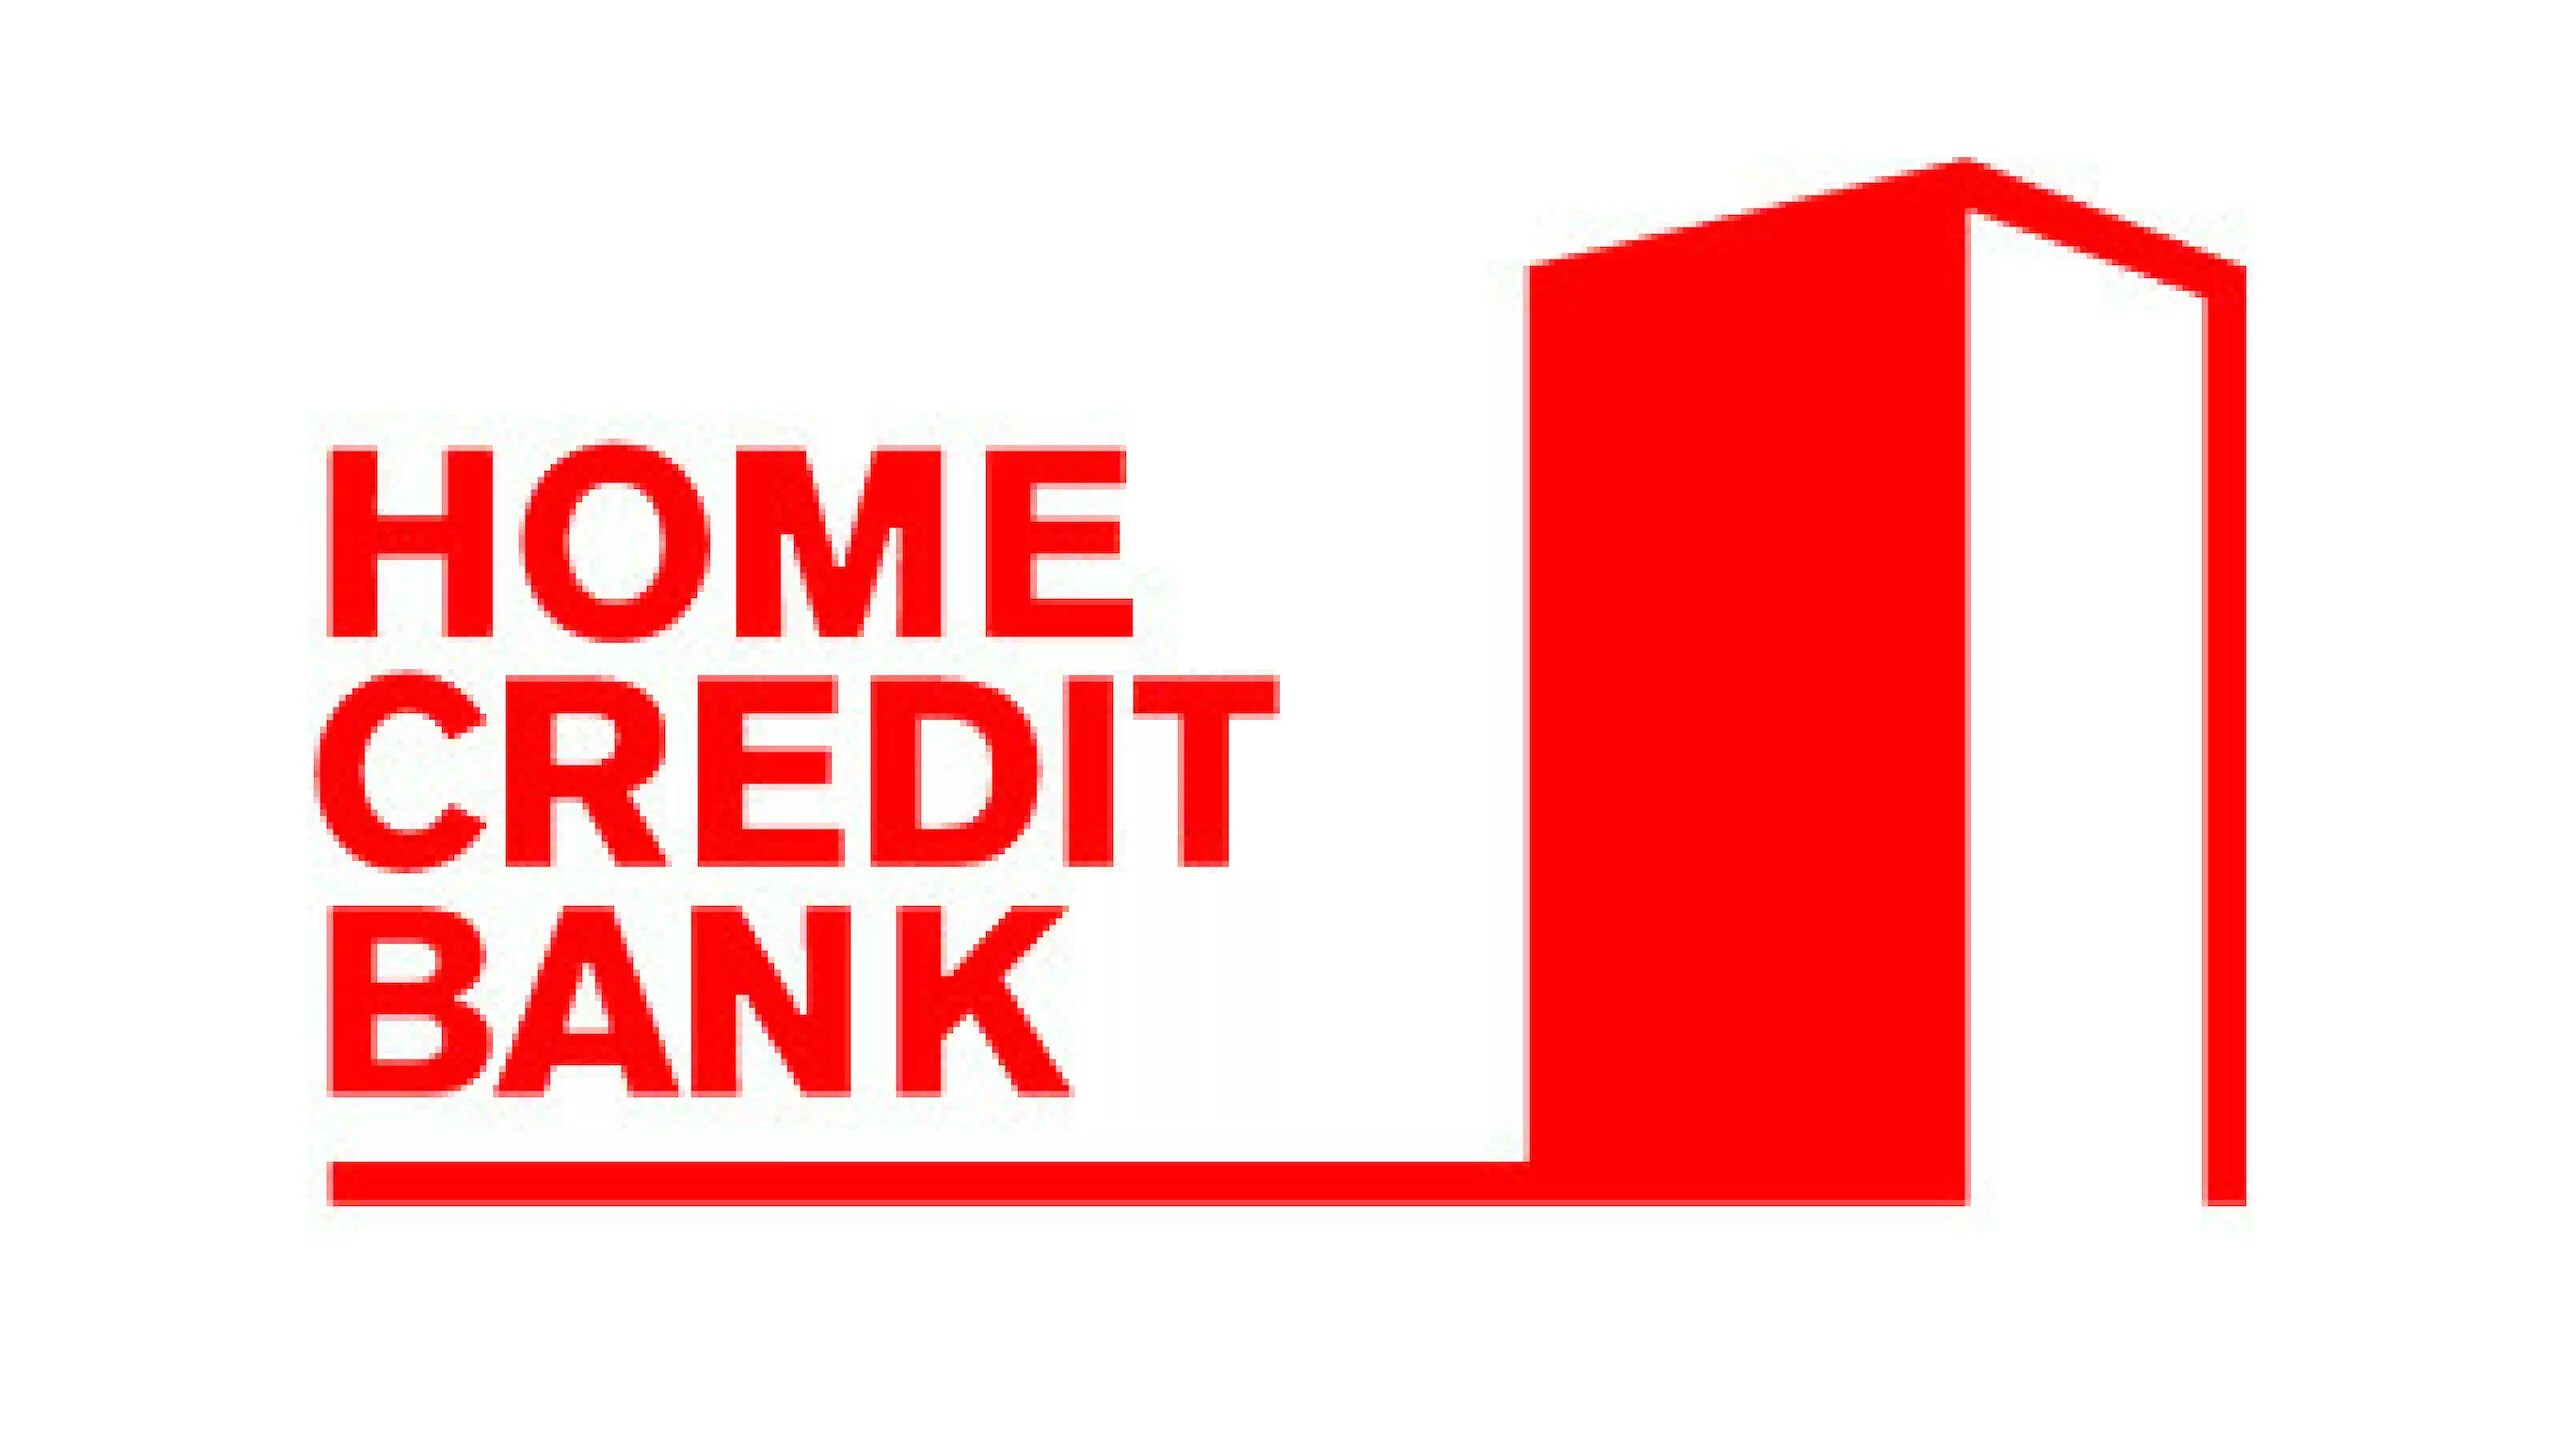 Банк Home credit. Хоум кредит логотип. Логотип Home credit банка. Home credit Bank логотип без фона. Сайт хоме кредит банк